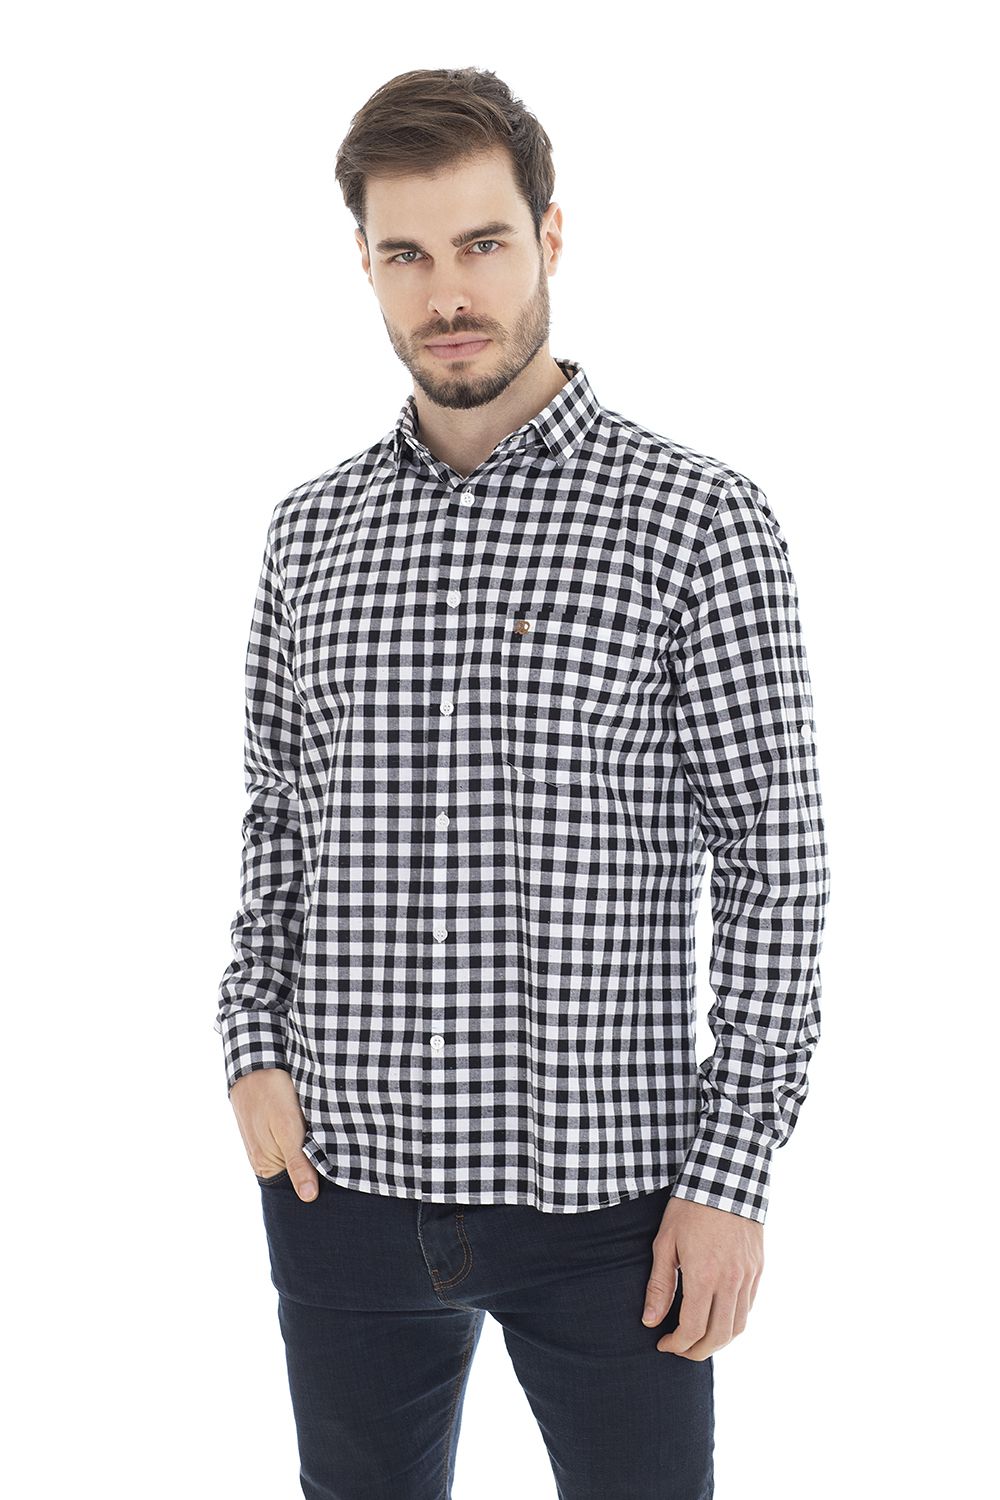 Camisa algodão masculina, Camisa alto padrão, Camisa xadrez, camisa ca -  Bretzel Trajes Típicos